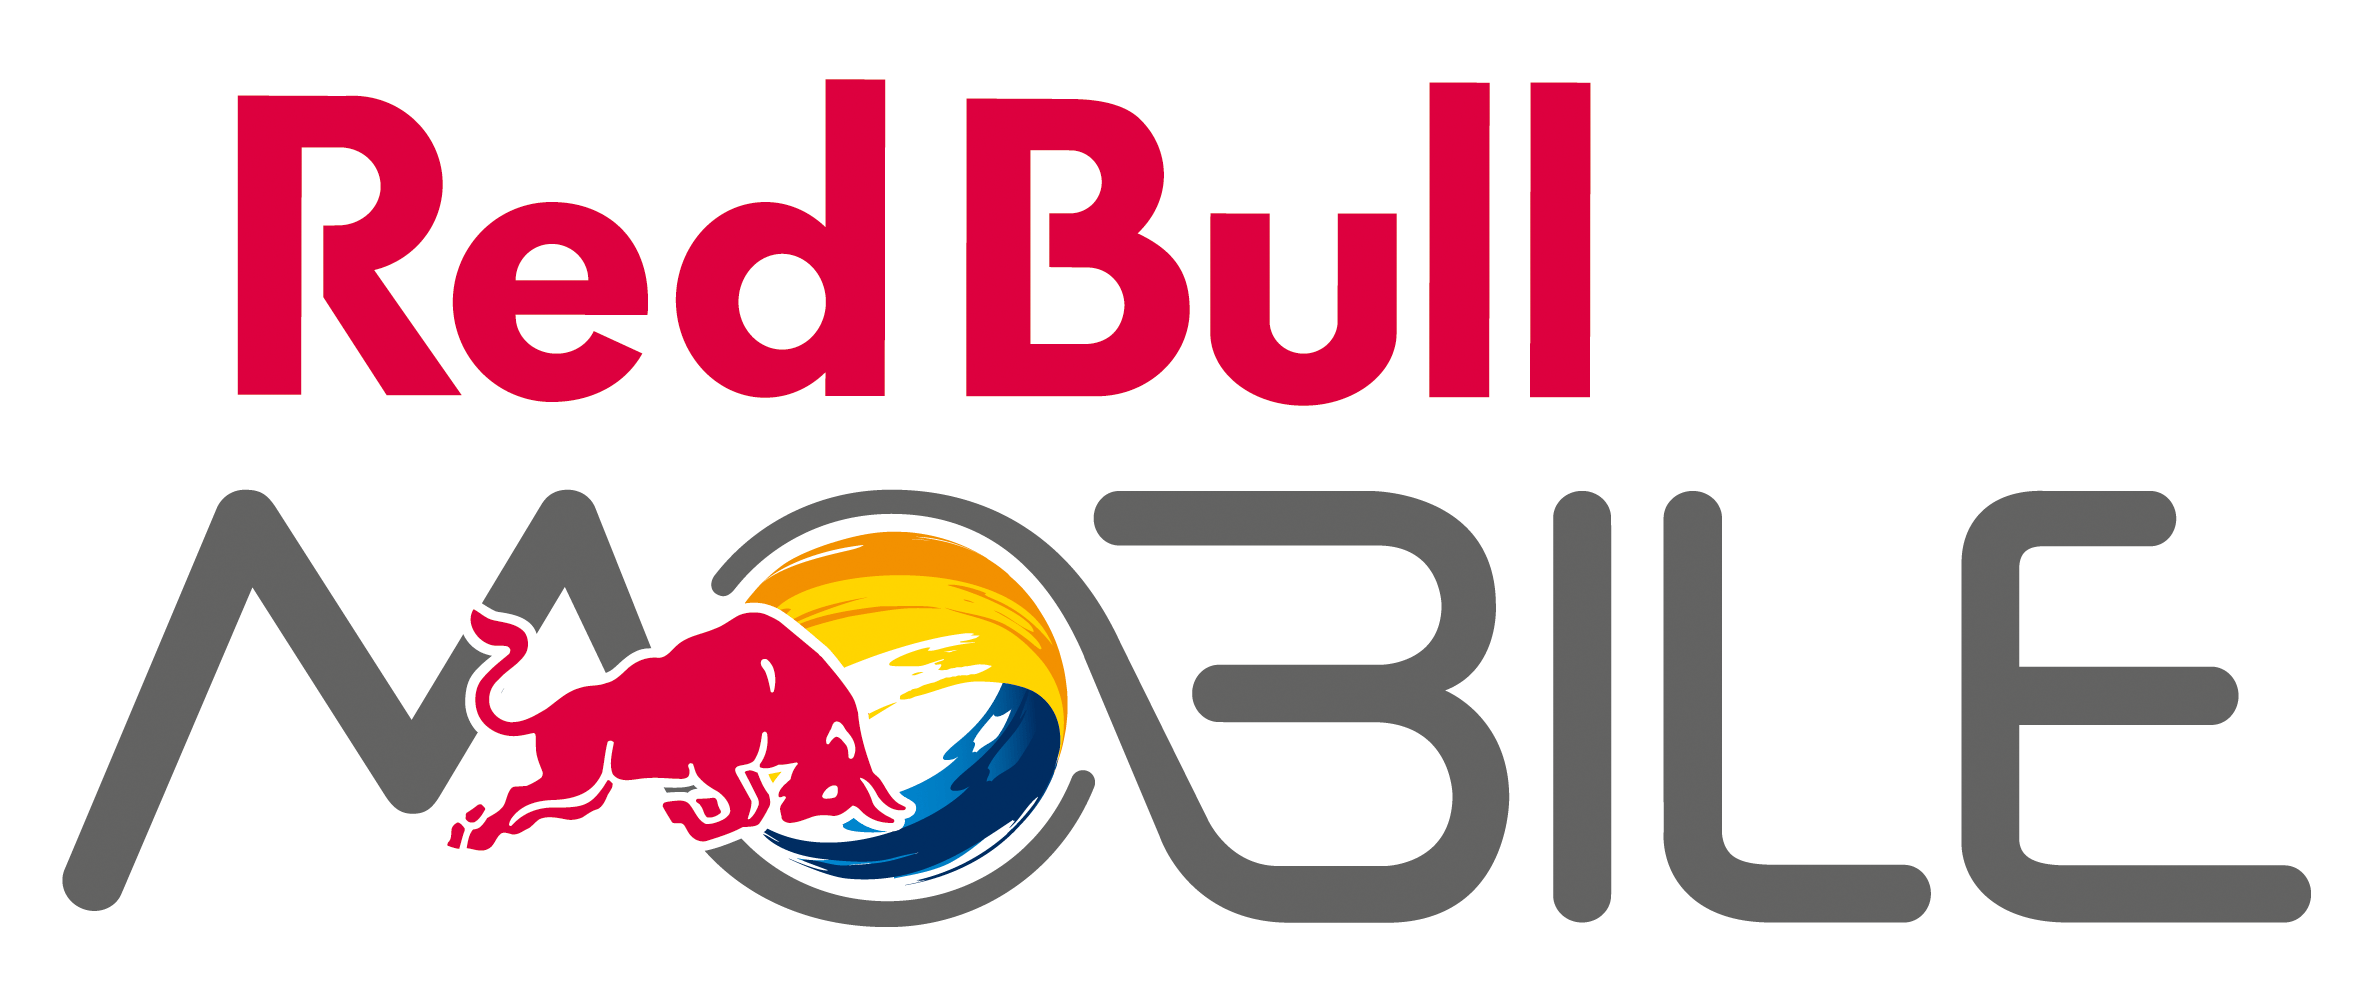 Red Bull Mobile Logo